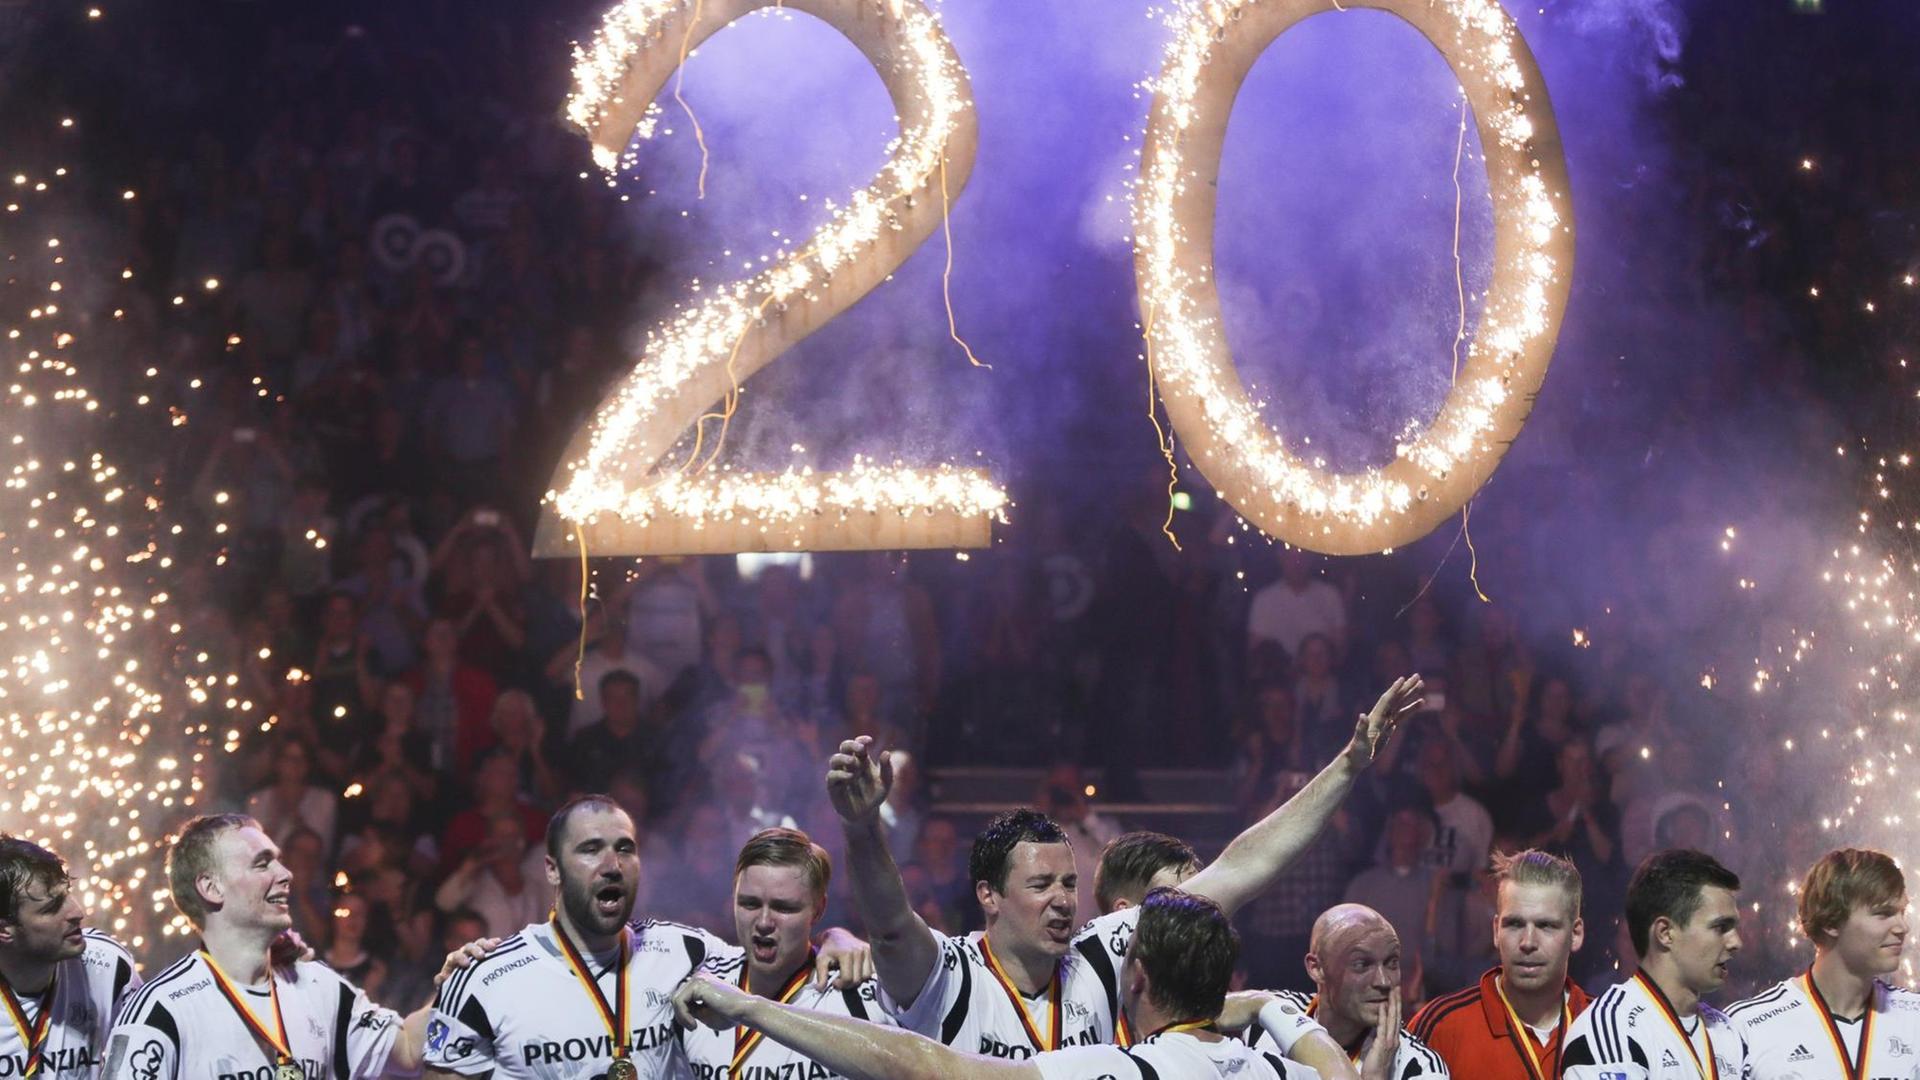 Die Spieler des THW Kiel feiern die 20. Deutsche Meisterschaft, im Hintergrund leuchtet die Zahl 20.